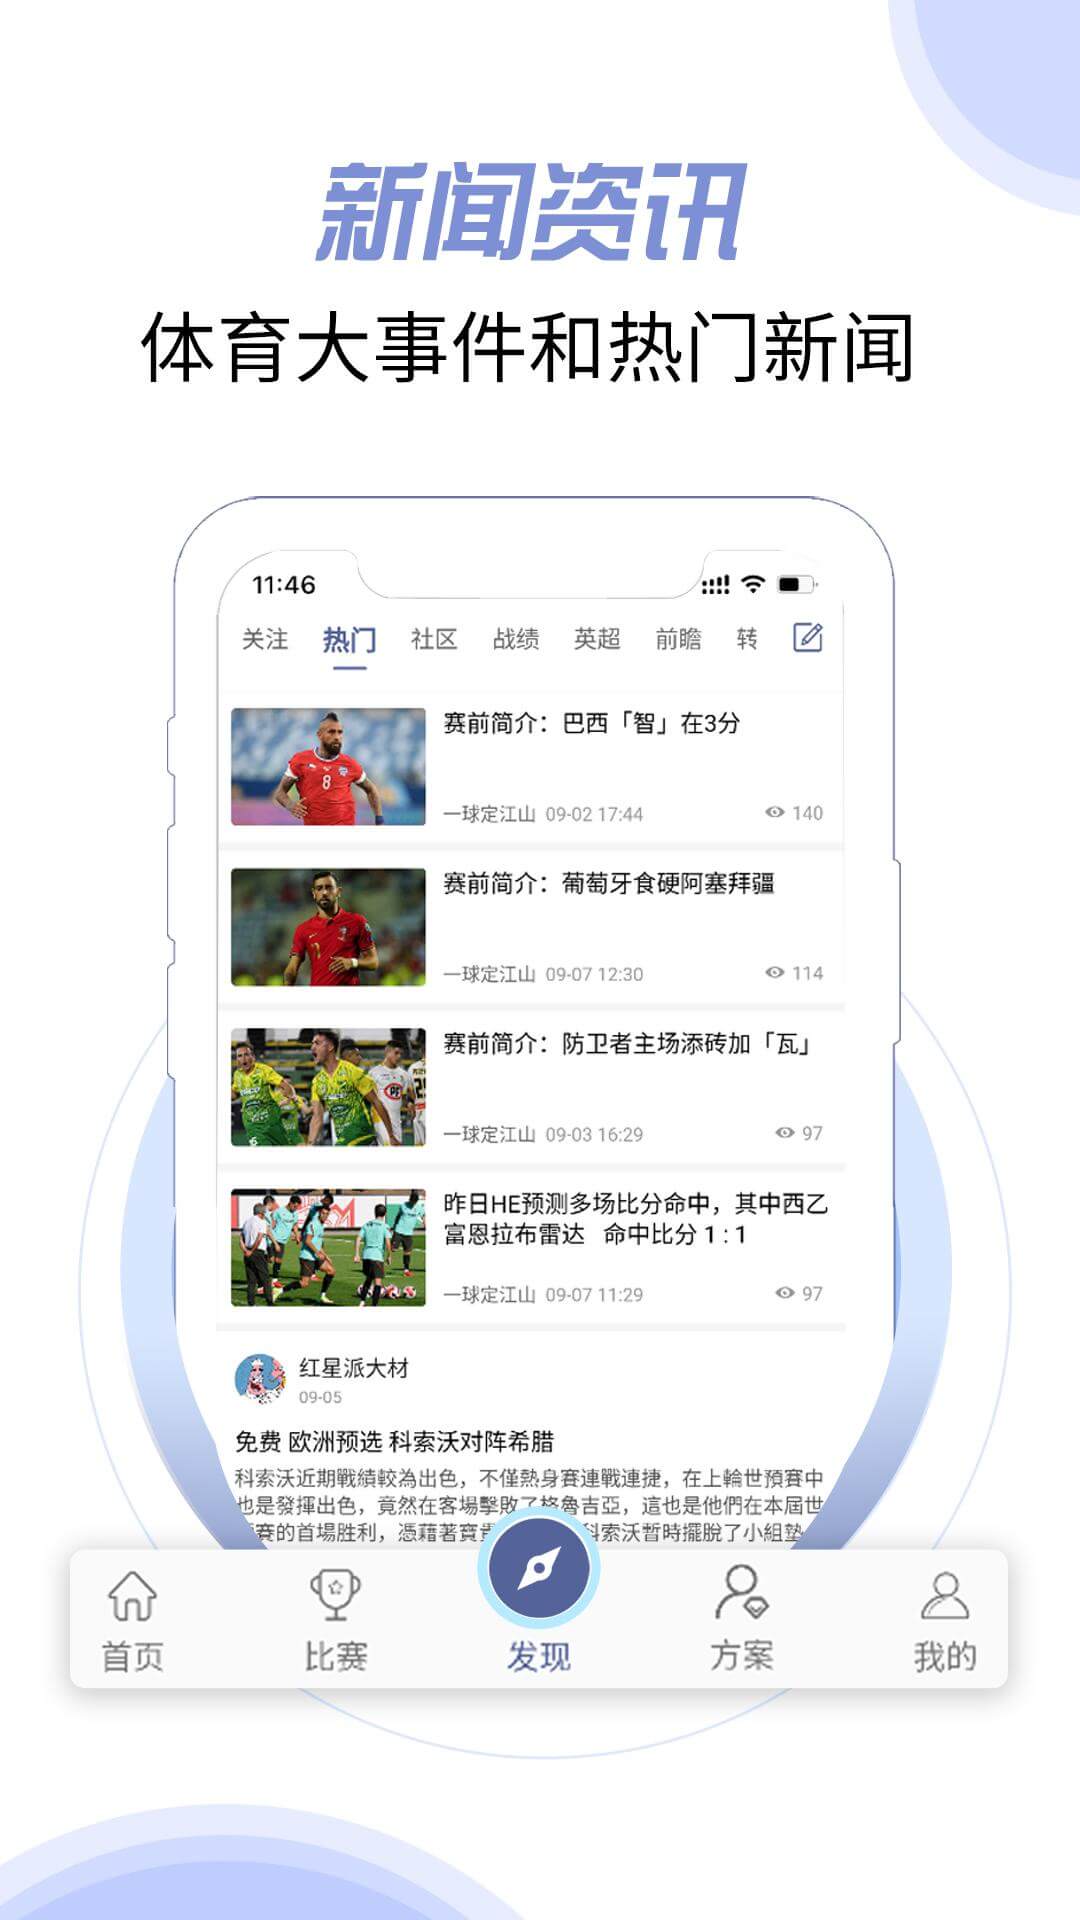 环球体育官网app下载_环球体育官网app最新版免费下载